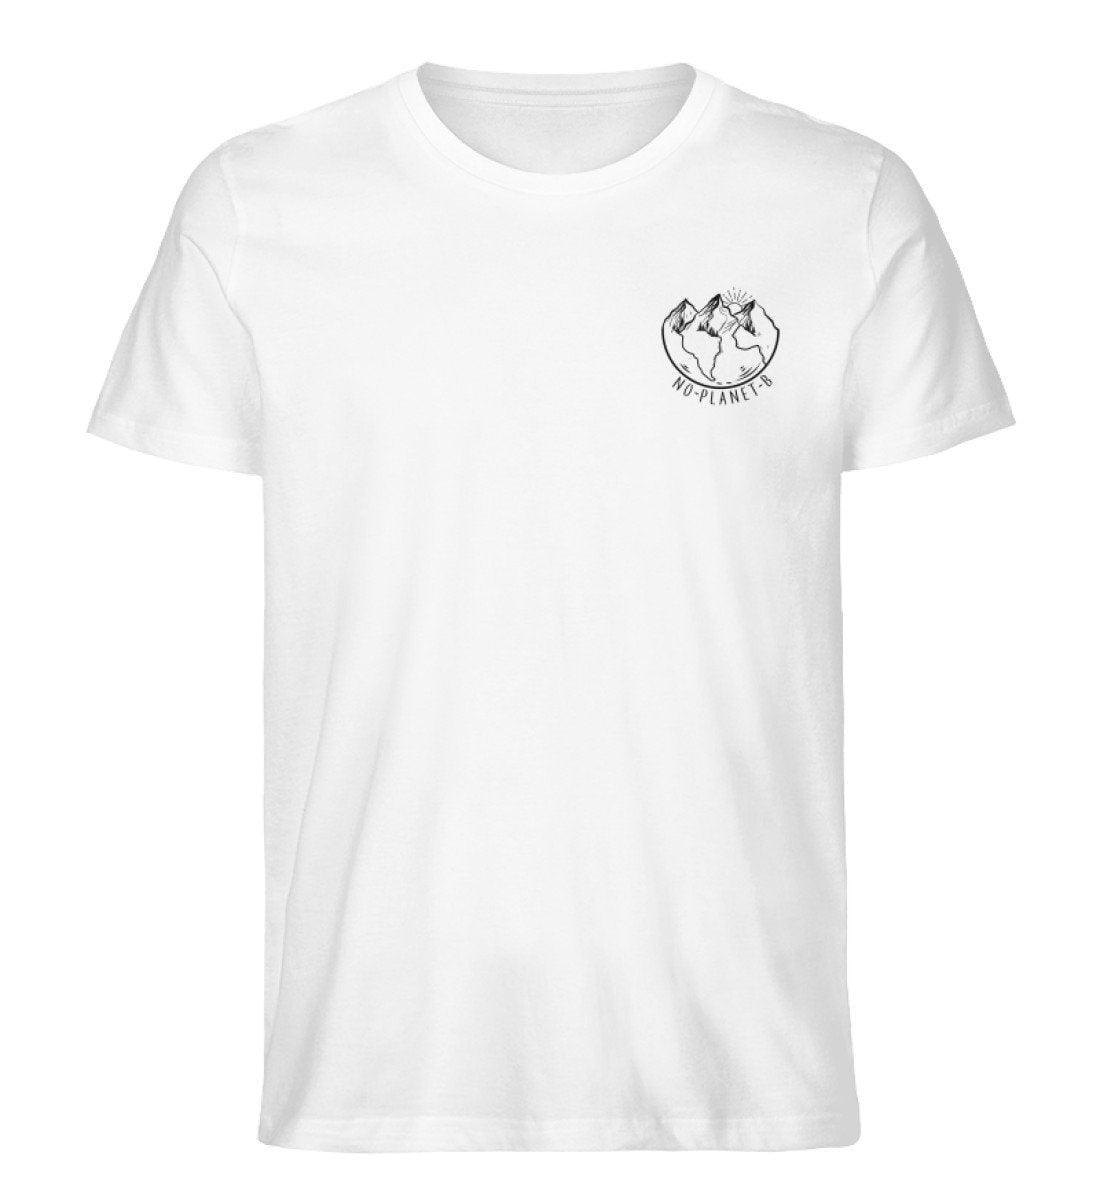 No planet b - Unisex Organic Shirt Rocker T-Shirt ST/ST Shirtee Weiß S 